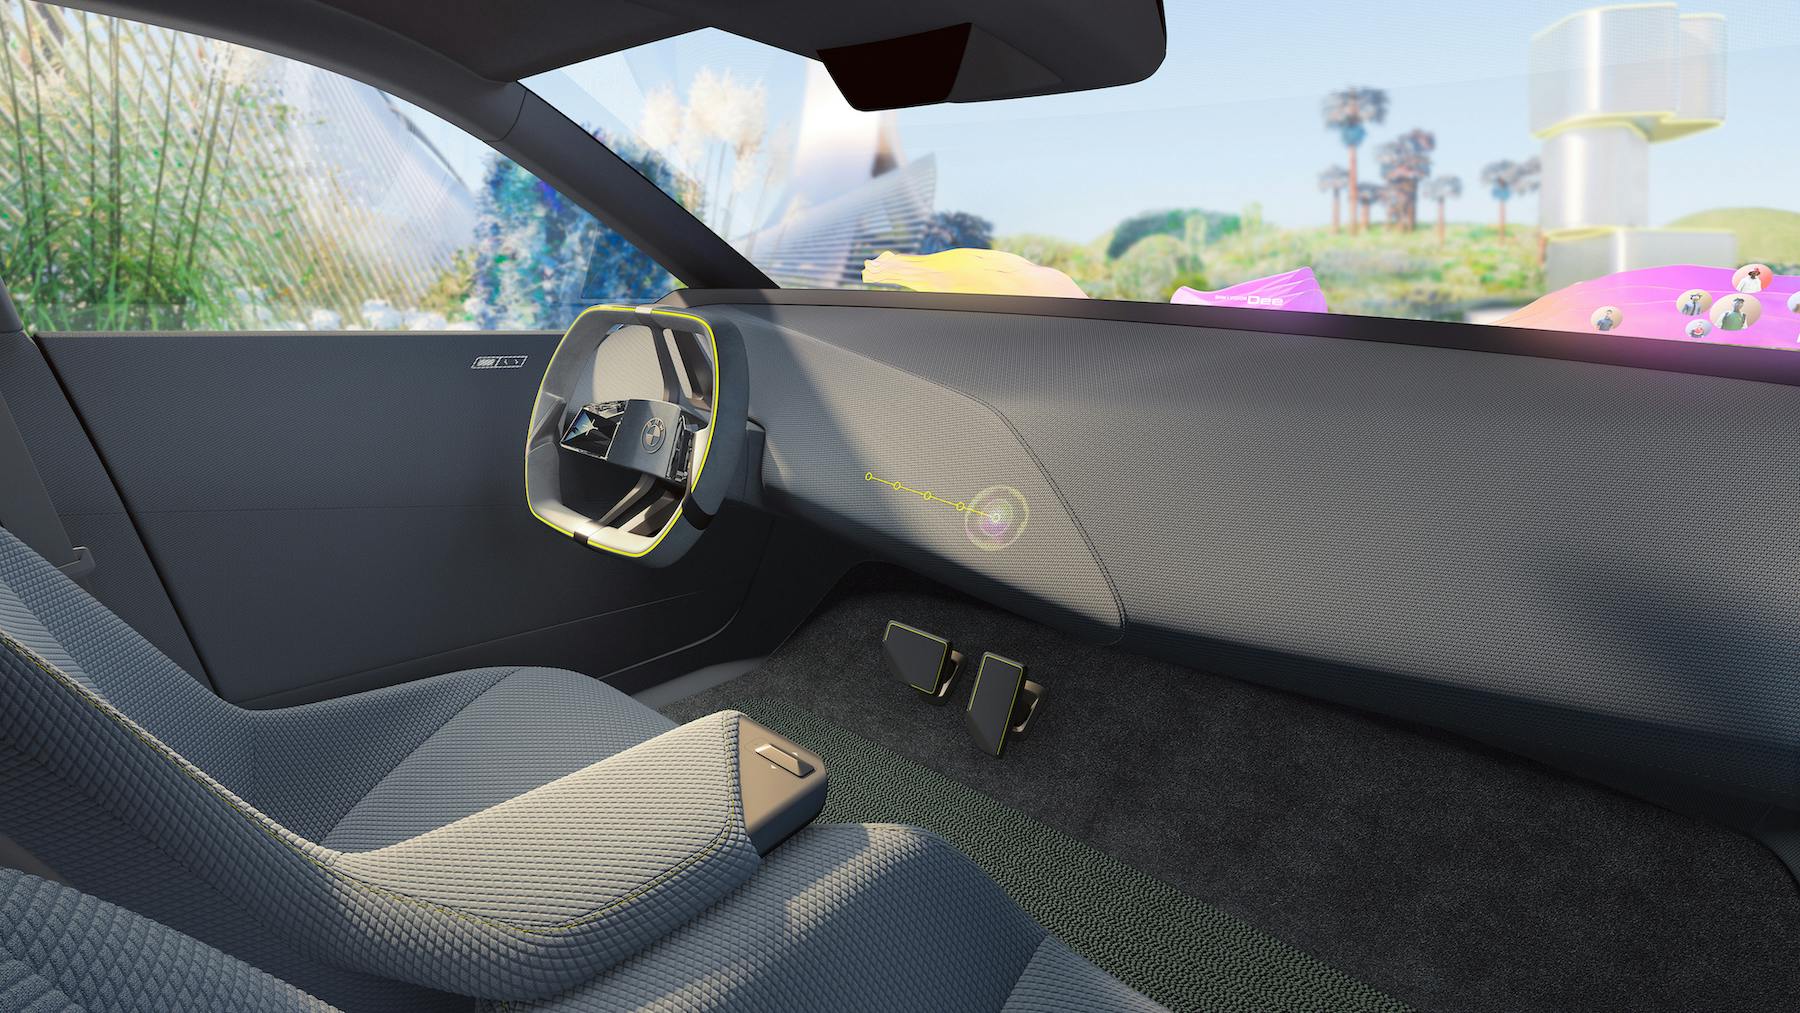 BMW Futuristic Generation Cars Rendering interior